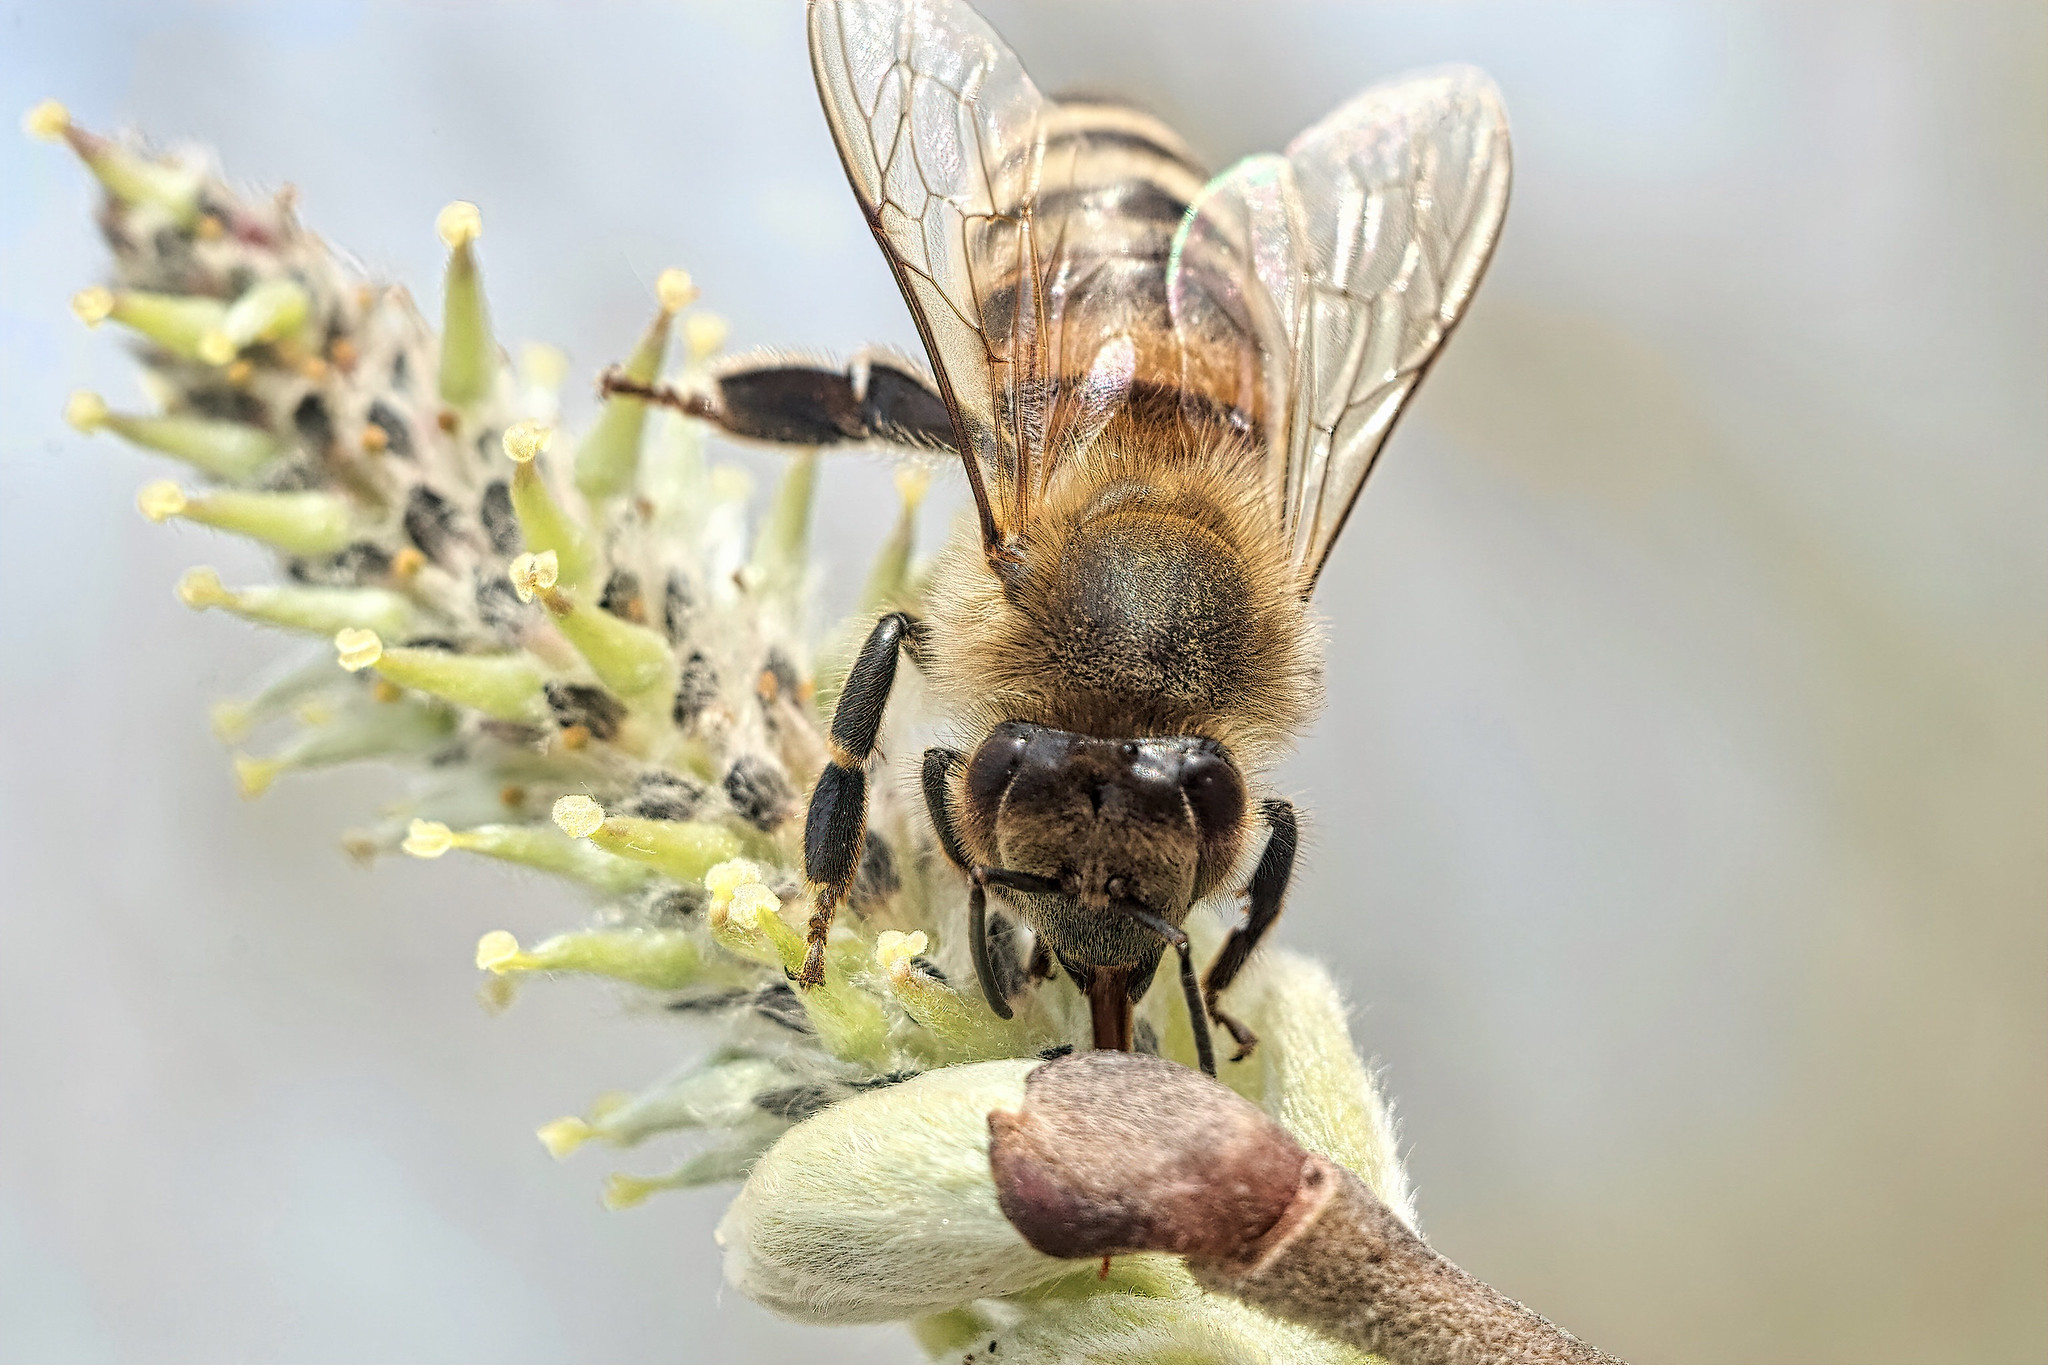 Honey bee (Apis mellifica) – Rott am Inn, Upper Bavaria, Germany